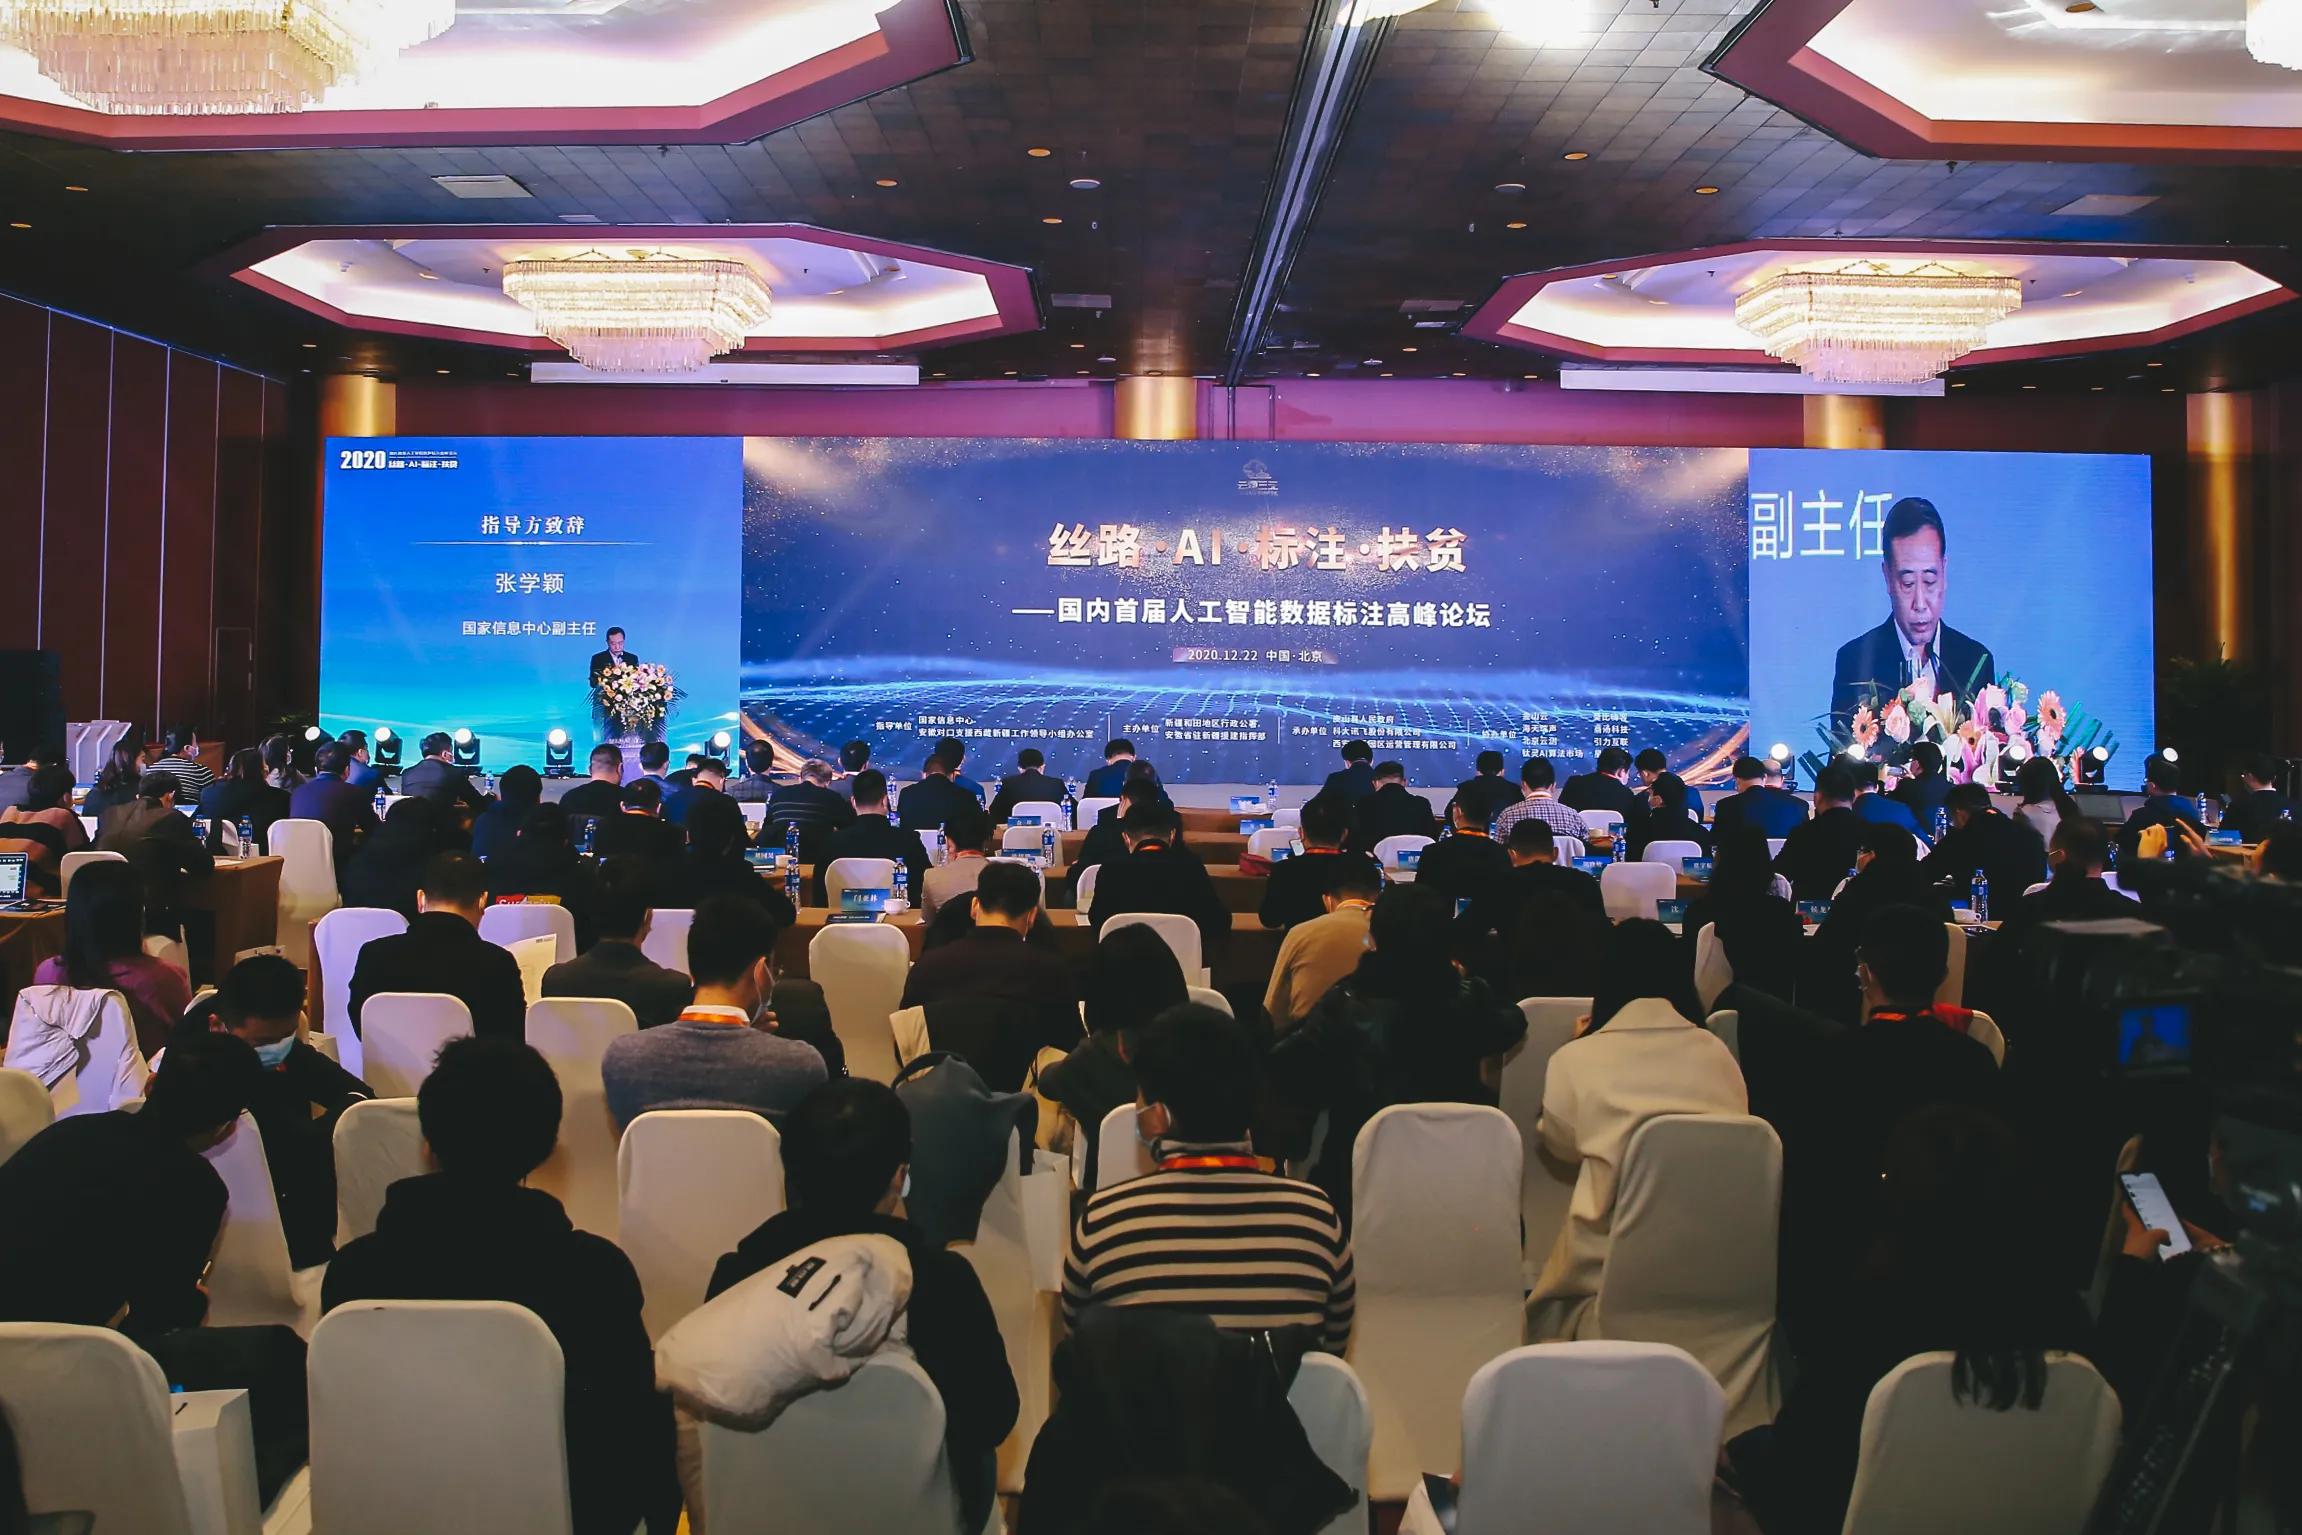 丝绸之路•AI•标注•扶贫-首届人为智能数据标注顶峰论坛在京举行